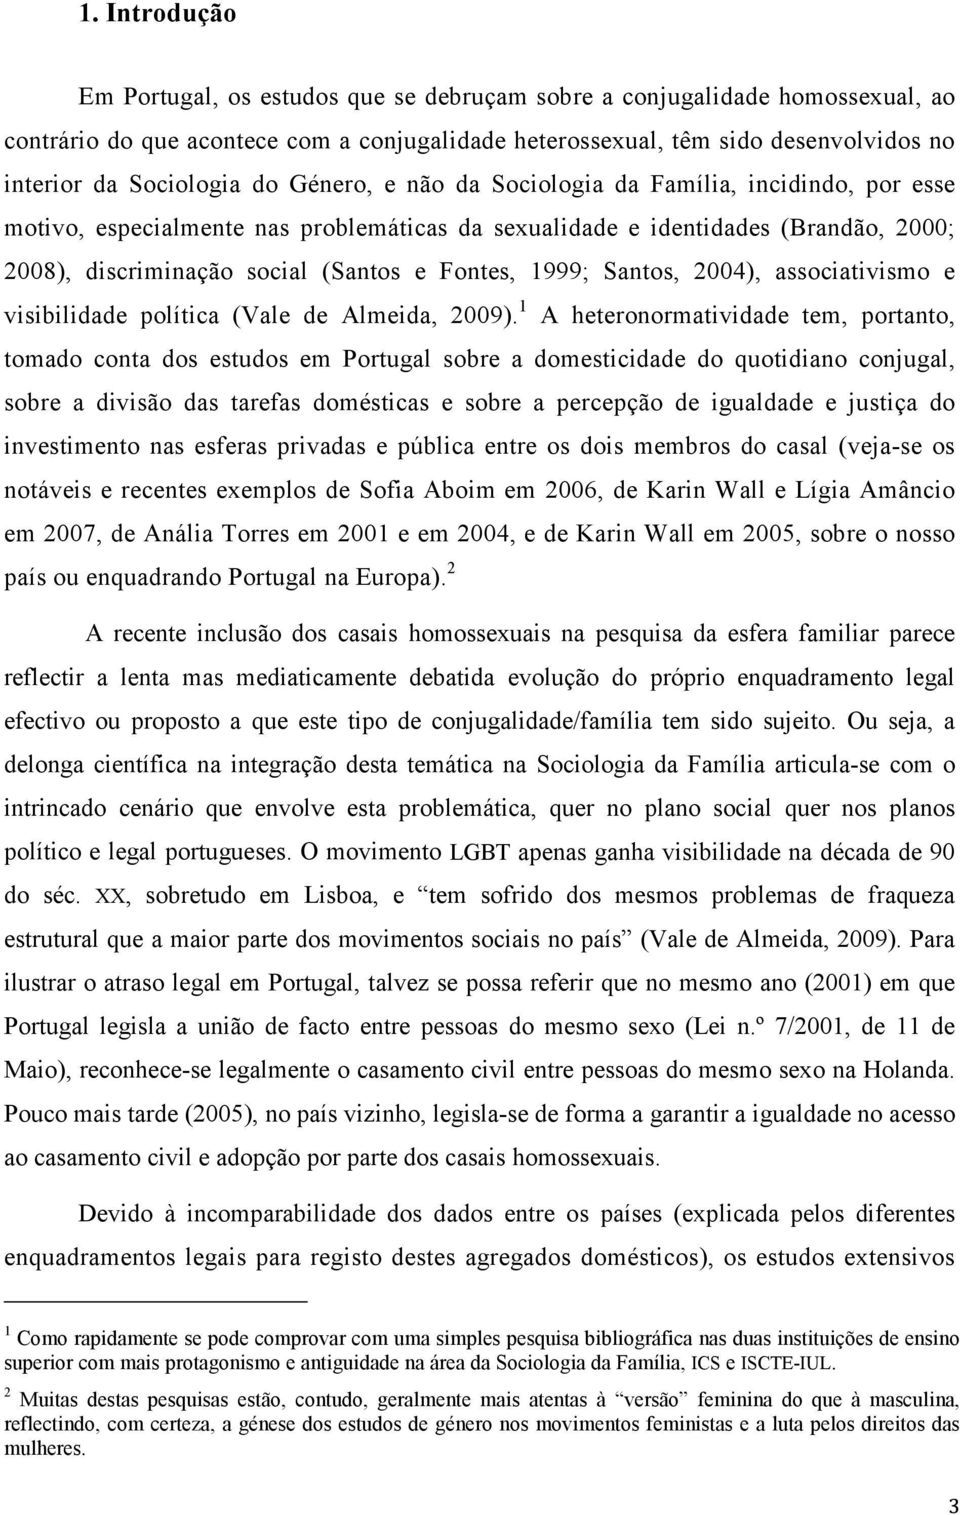 Fontes, 1999; Santos, 2004), associativismo e visibilidade política (Vale de Almeida, 2009).